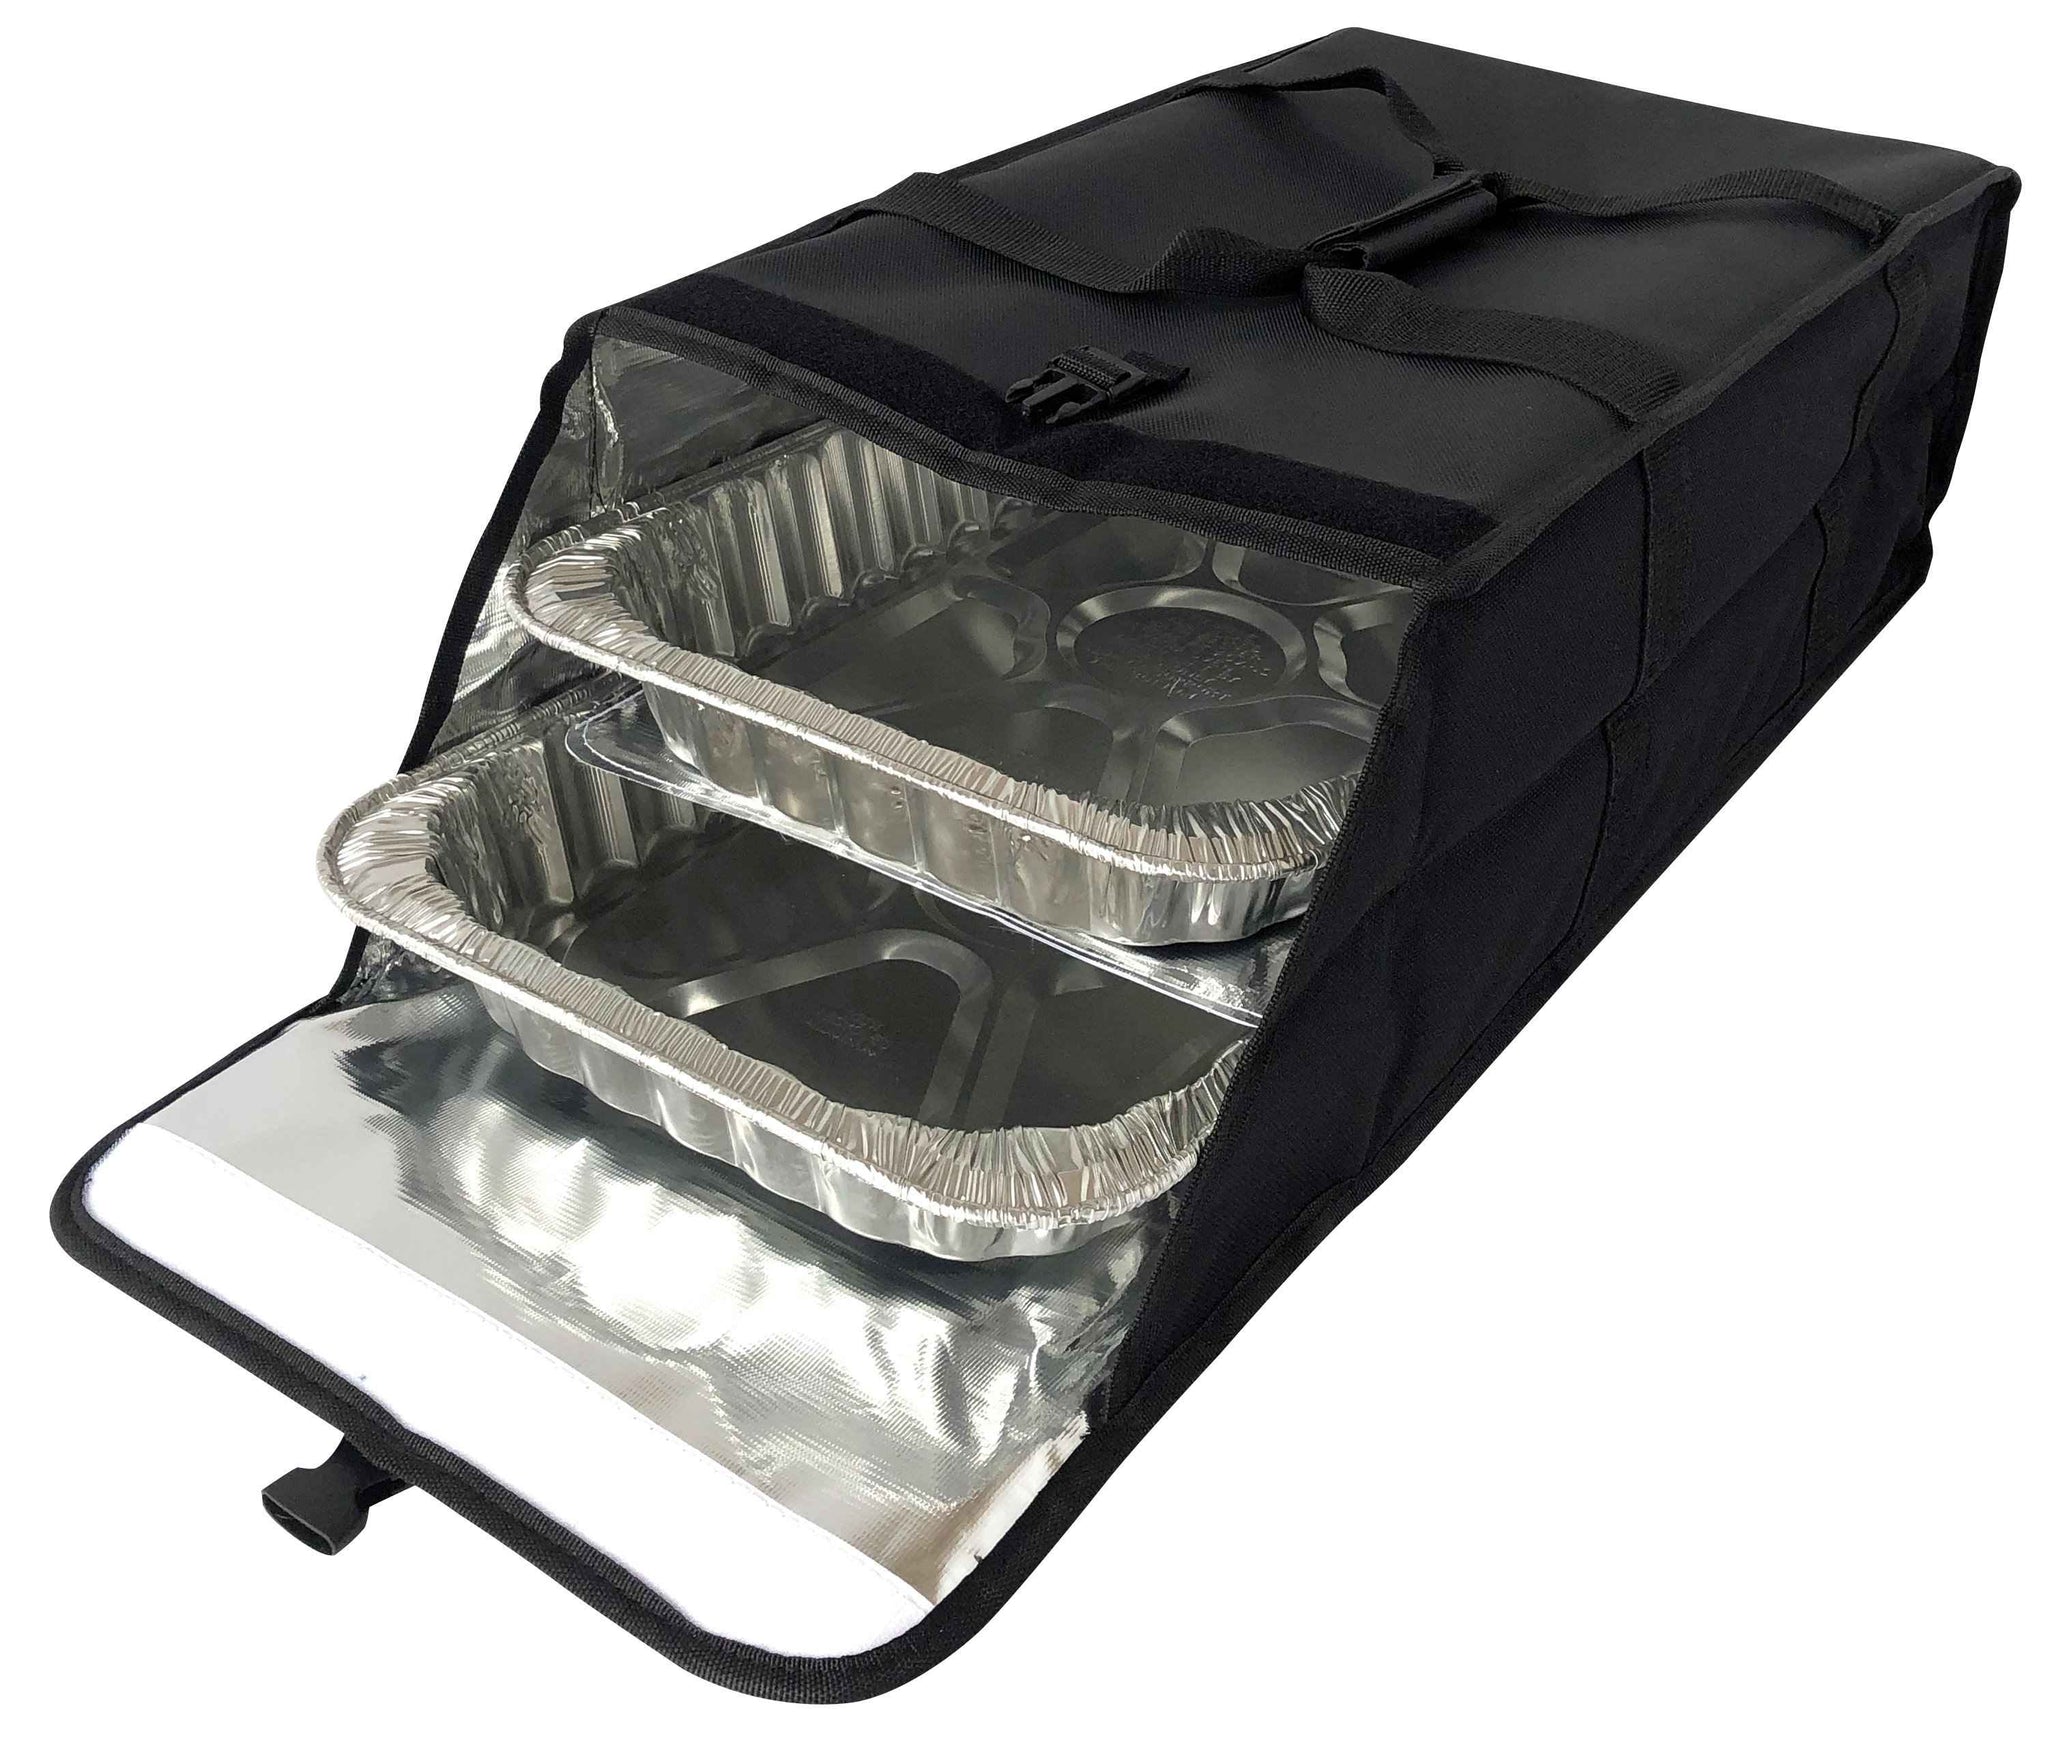 Medium Full Pan Side Loading Bag - 22"x13.5"x8.5" incrediblebags 